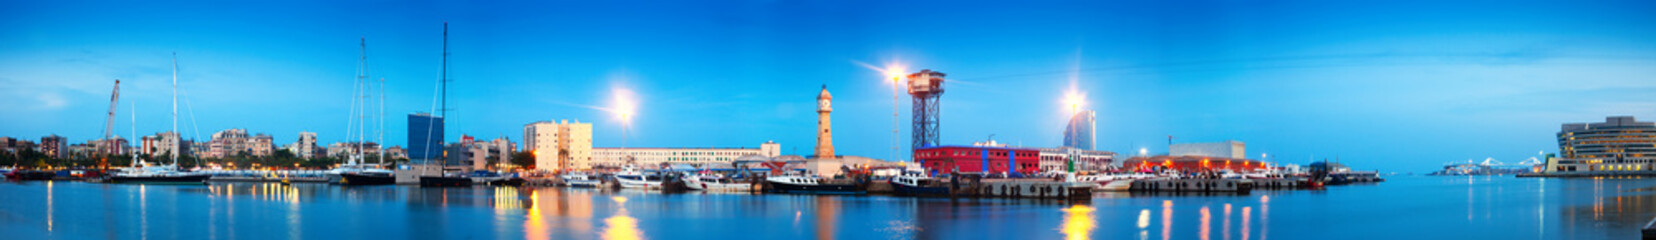 Obraz na płótnie wieża widok łódź hiszpania